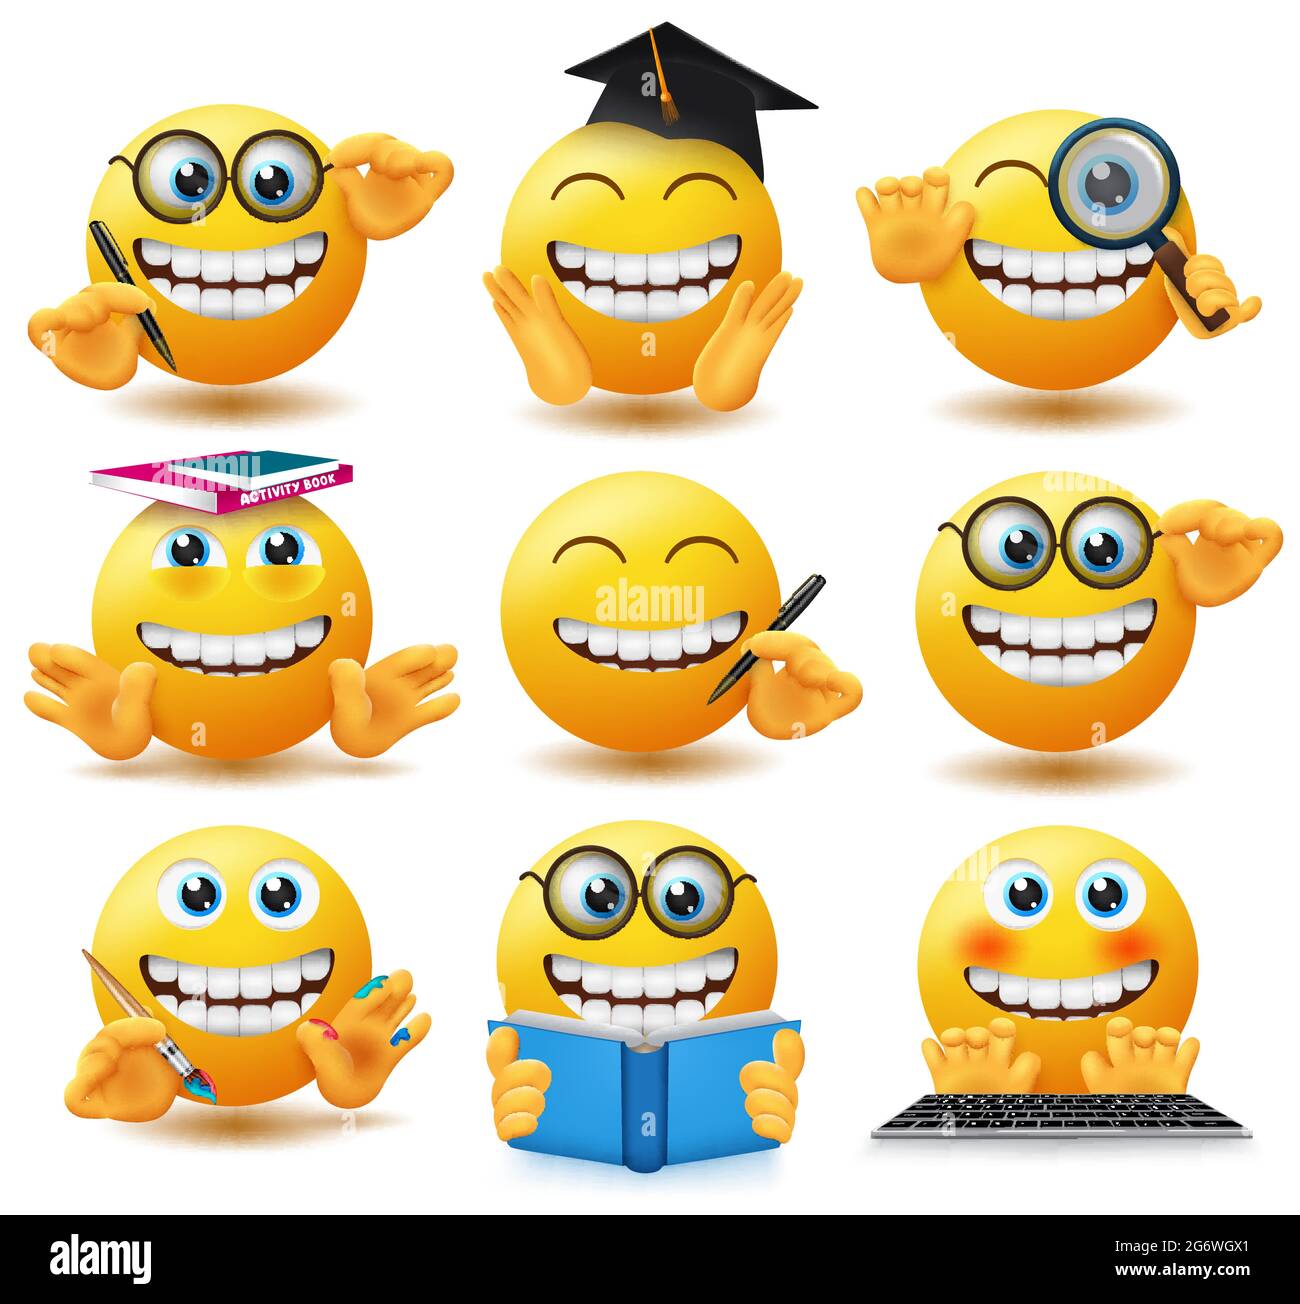 Insieme di vettori emoticon per studenti della scuola di Smileys. Emojis smiley in espressione felice e allegra con posa educativa e gesti come lo studio, la pittura. Illustrazione Vettoriale